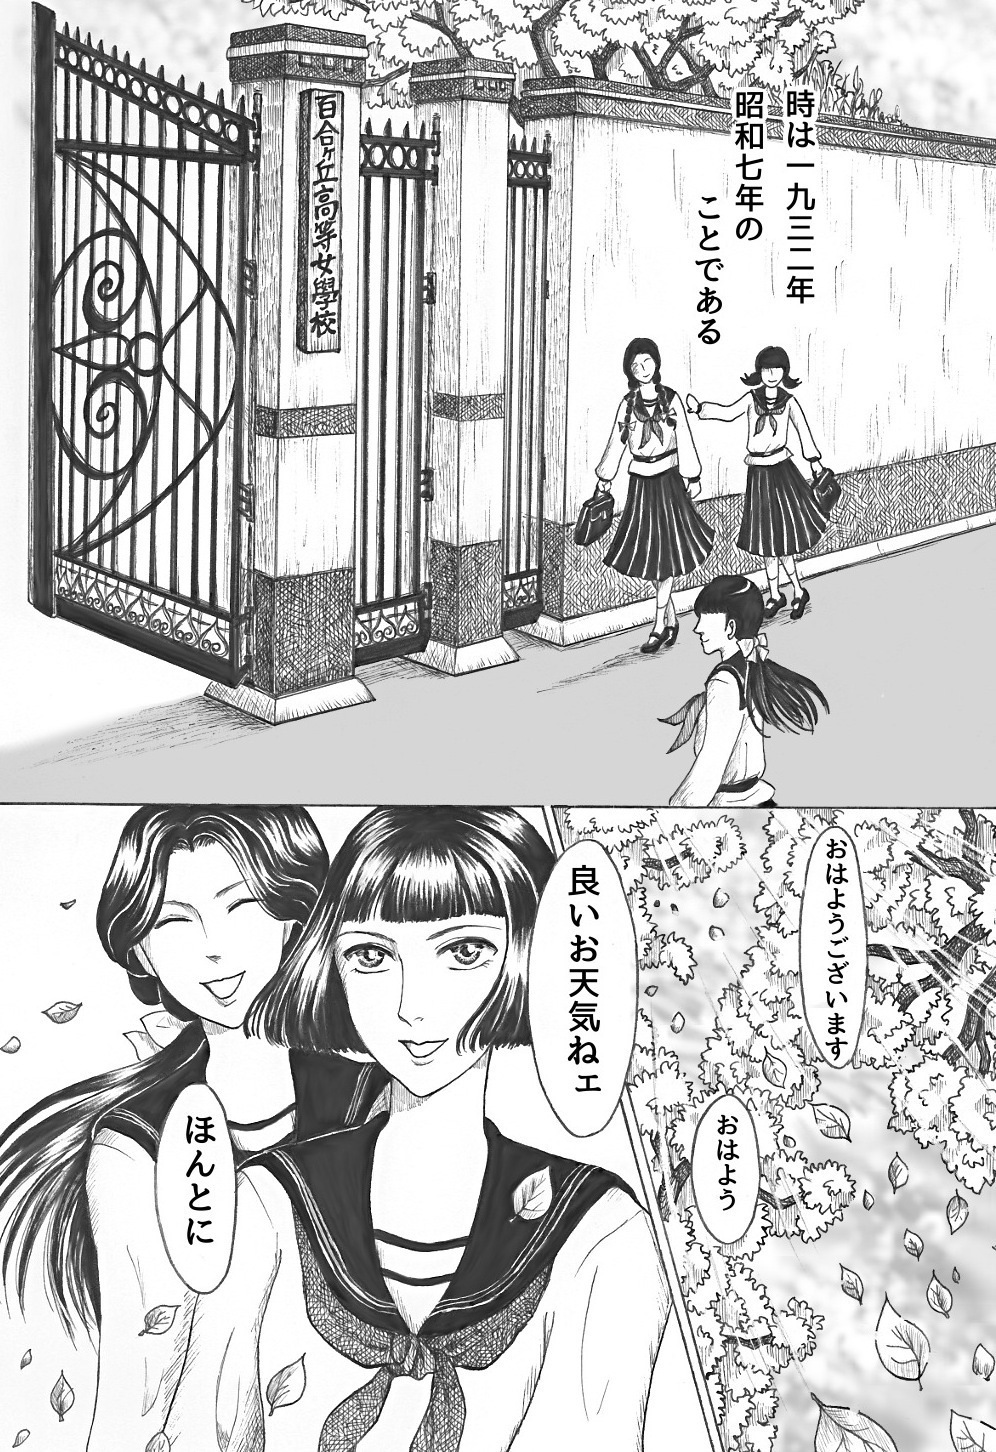 昭和初期の女学生をモチーフにした妙な漫画 １ ネガティブ詩日記 孤独翼